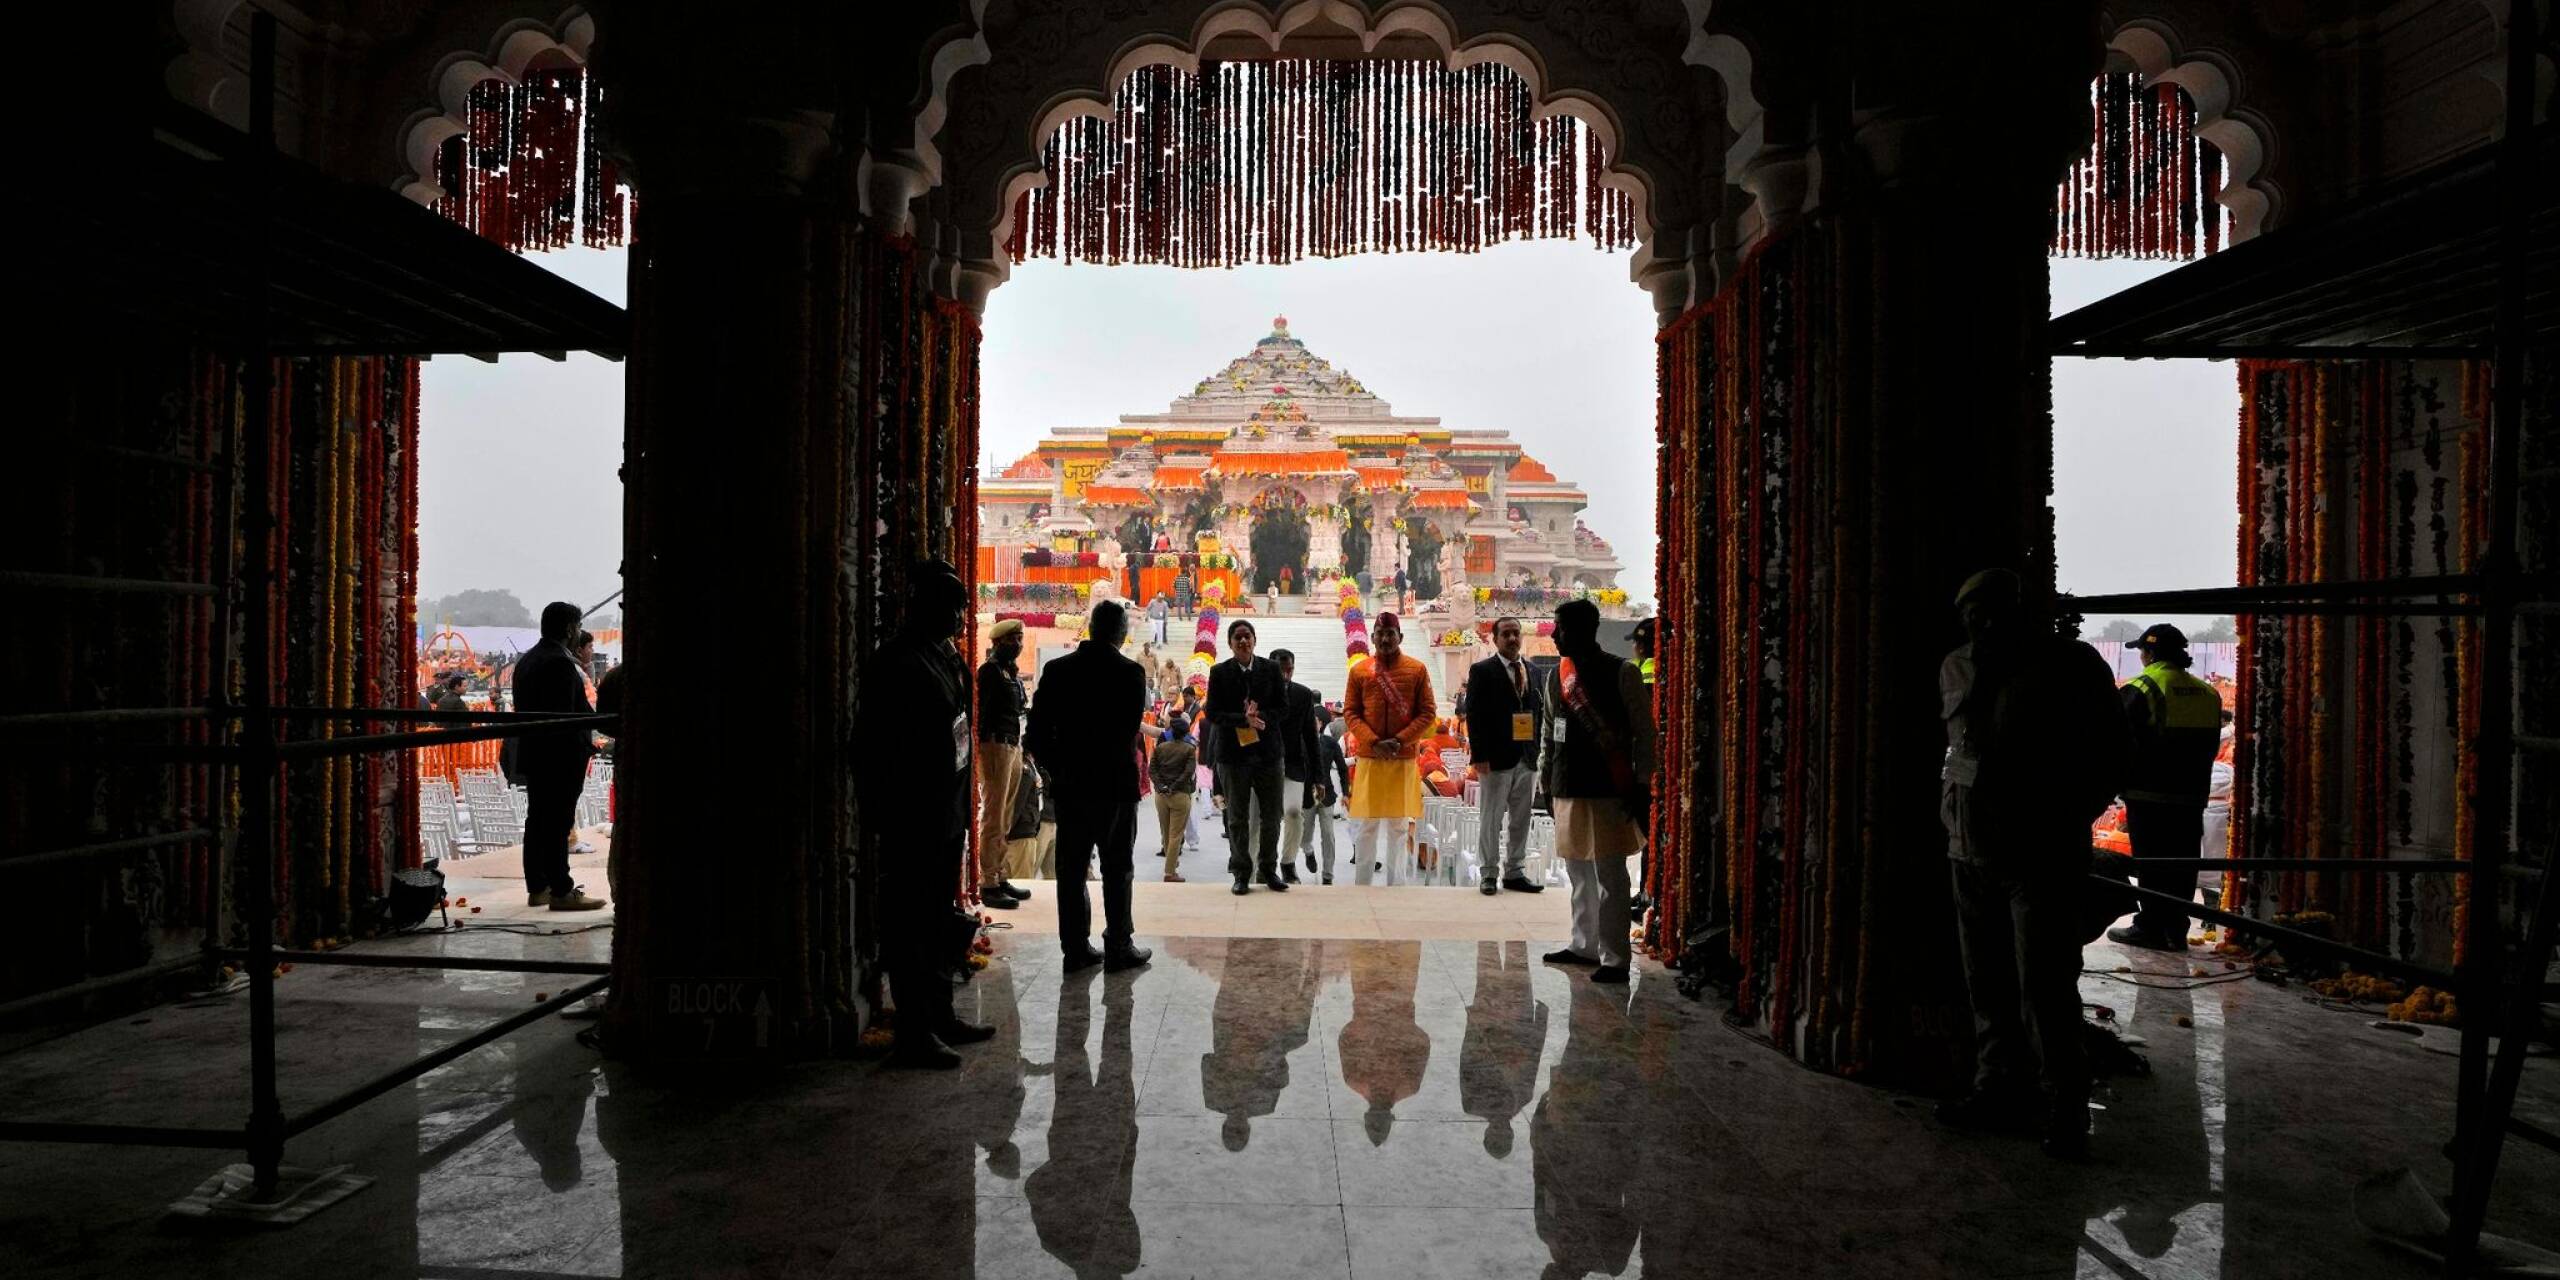 Menschen kommen zur Einweihung des Tempels des Hindu-Gottes Ram in Ayodhya im nordindischen Bundesstaat Uttar Pradesh. Zuvor stand an der Stelle des prächtigen Tempels eine Moschee aus dem 16. Jahrhundert, die im Dezember 1992 von einem hinduistischen Mob zerstört wurde.